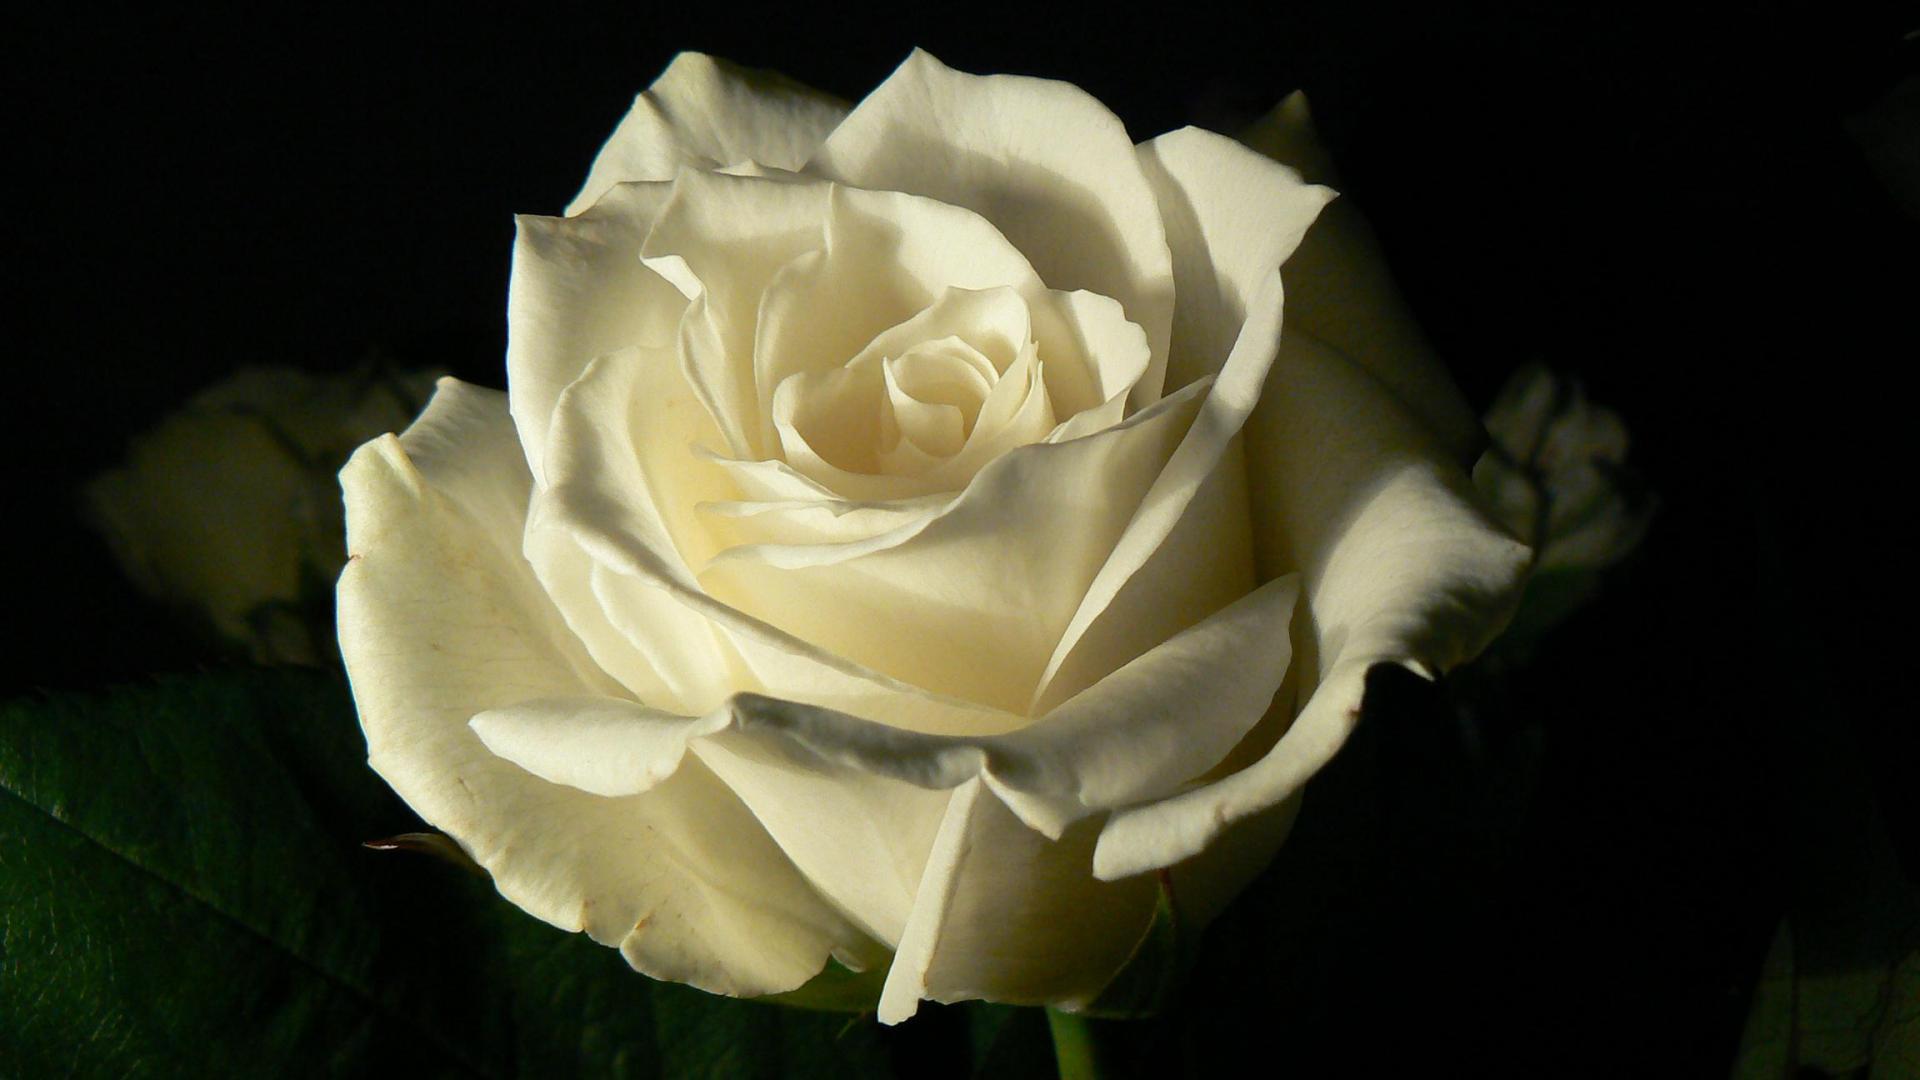 White Roses Black Background